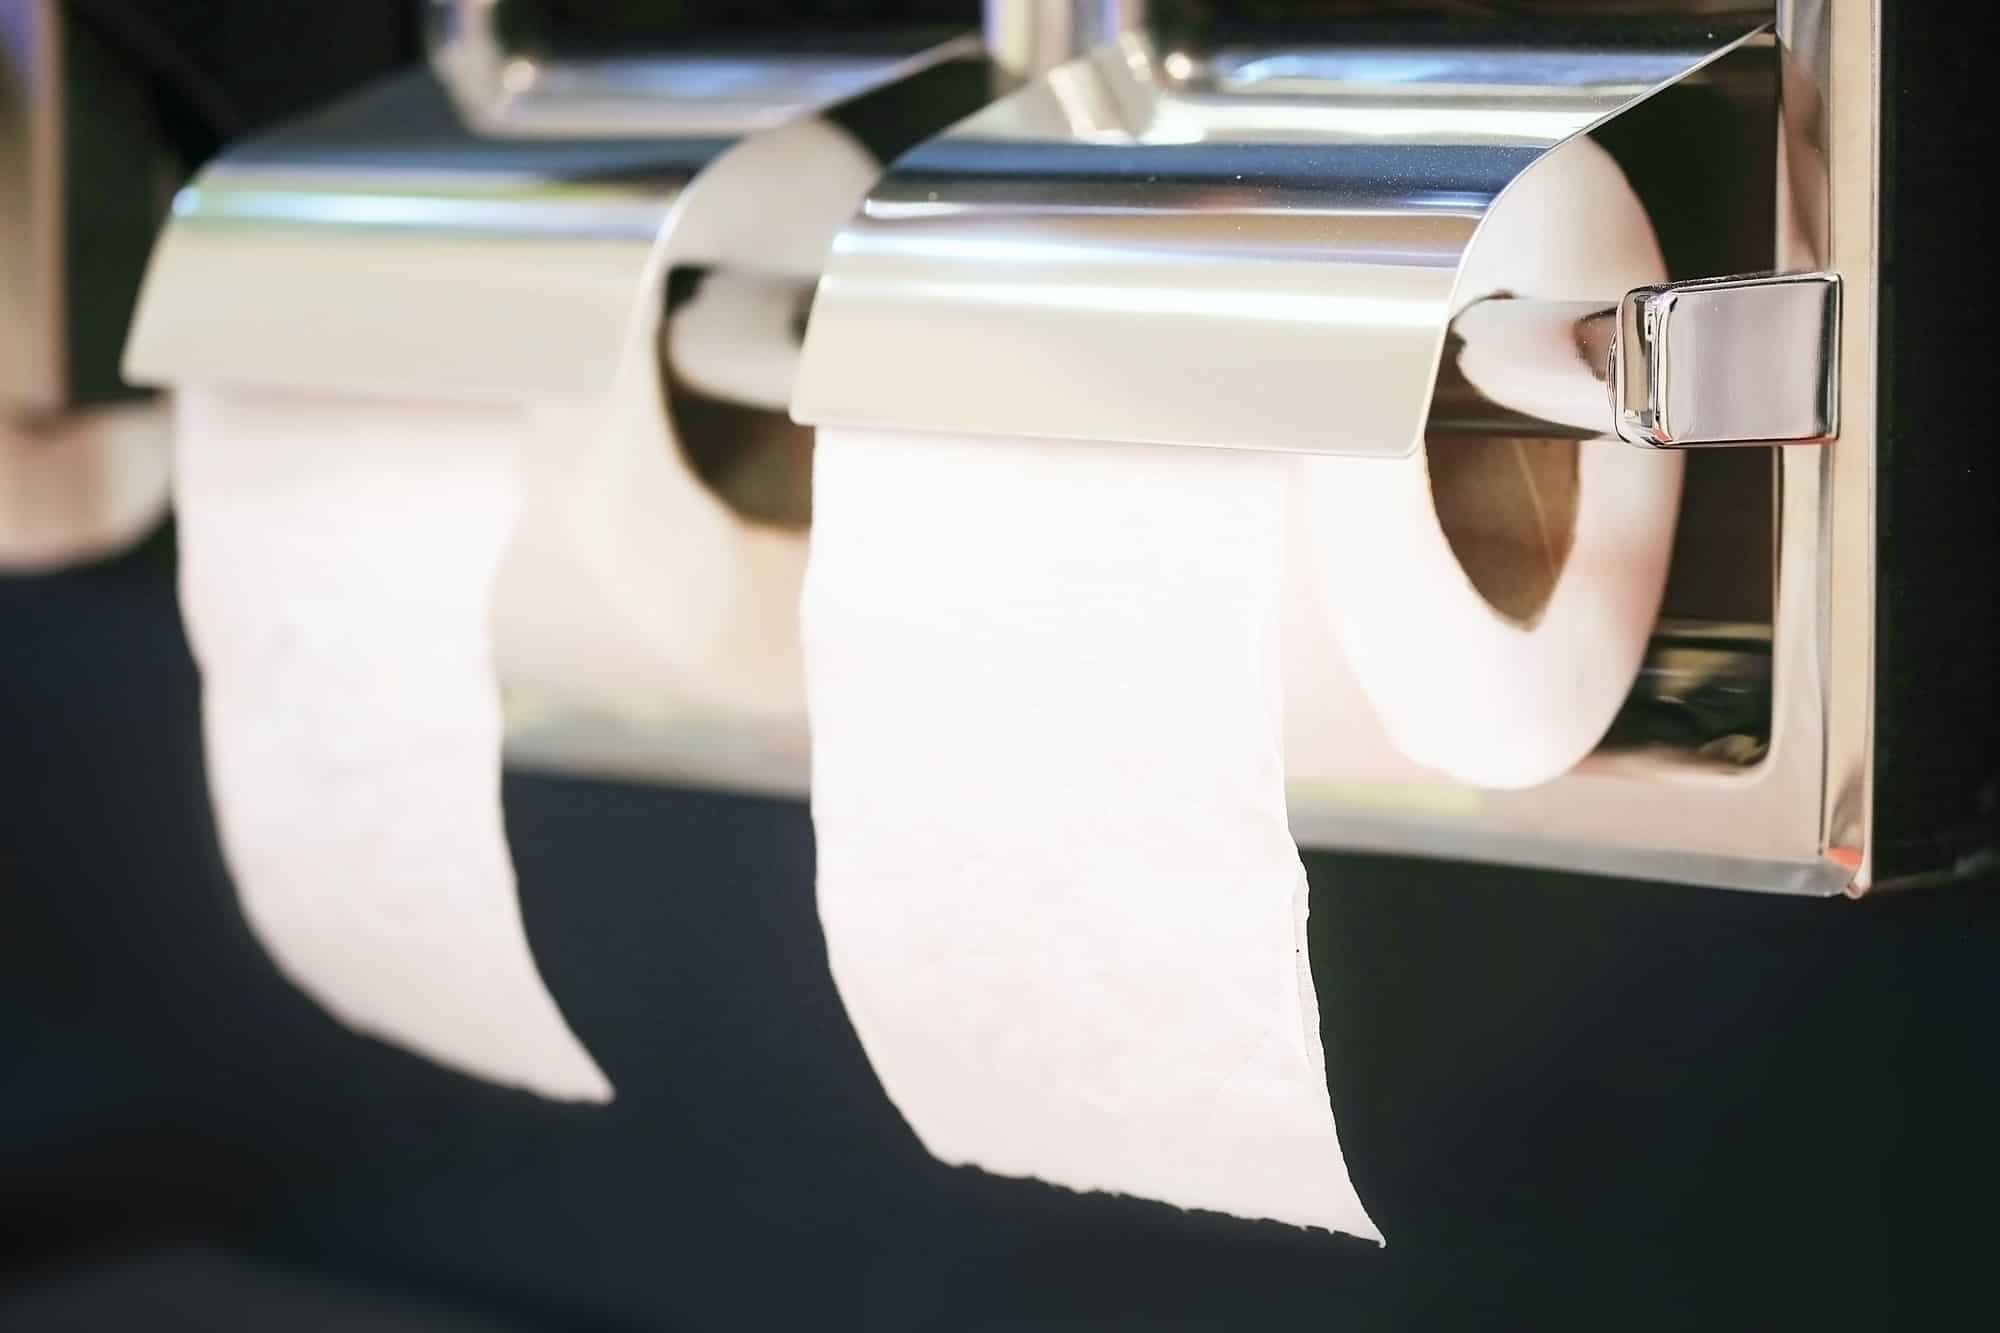 Vintage Toilet Paper Holders